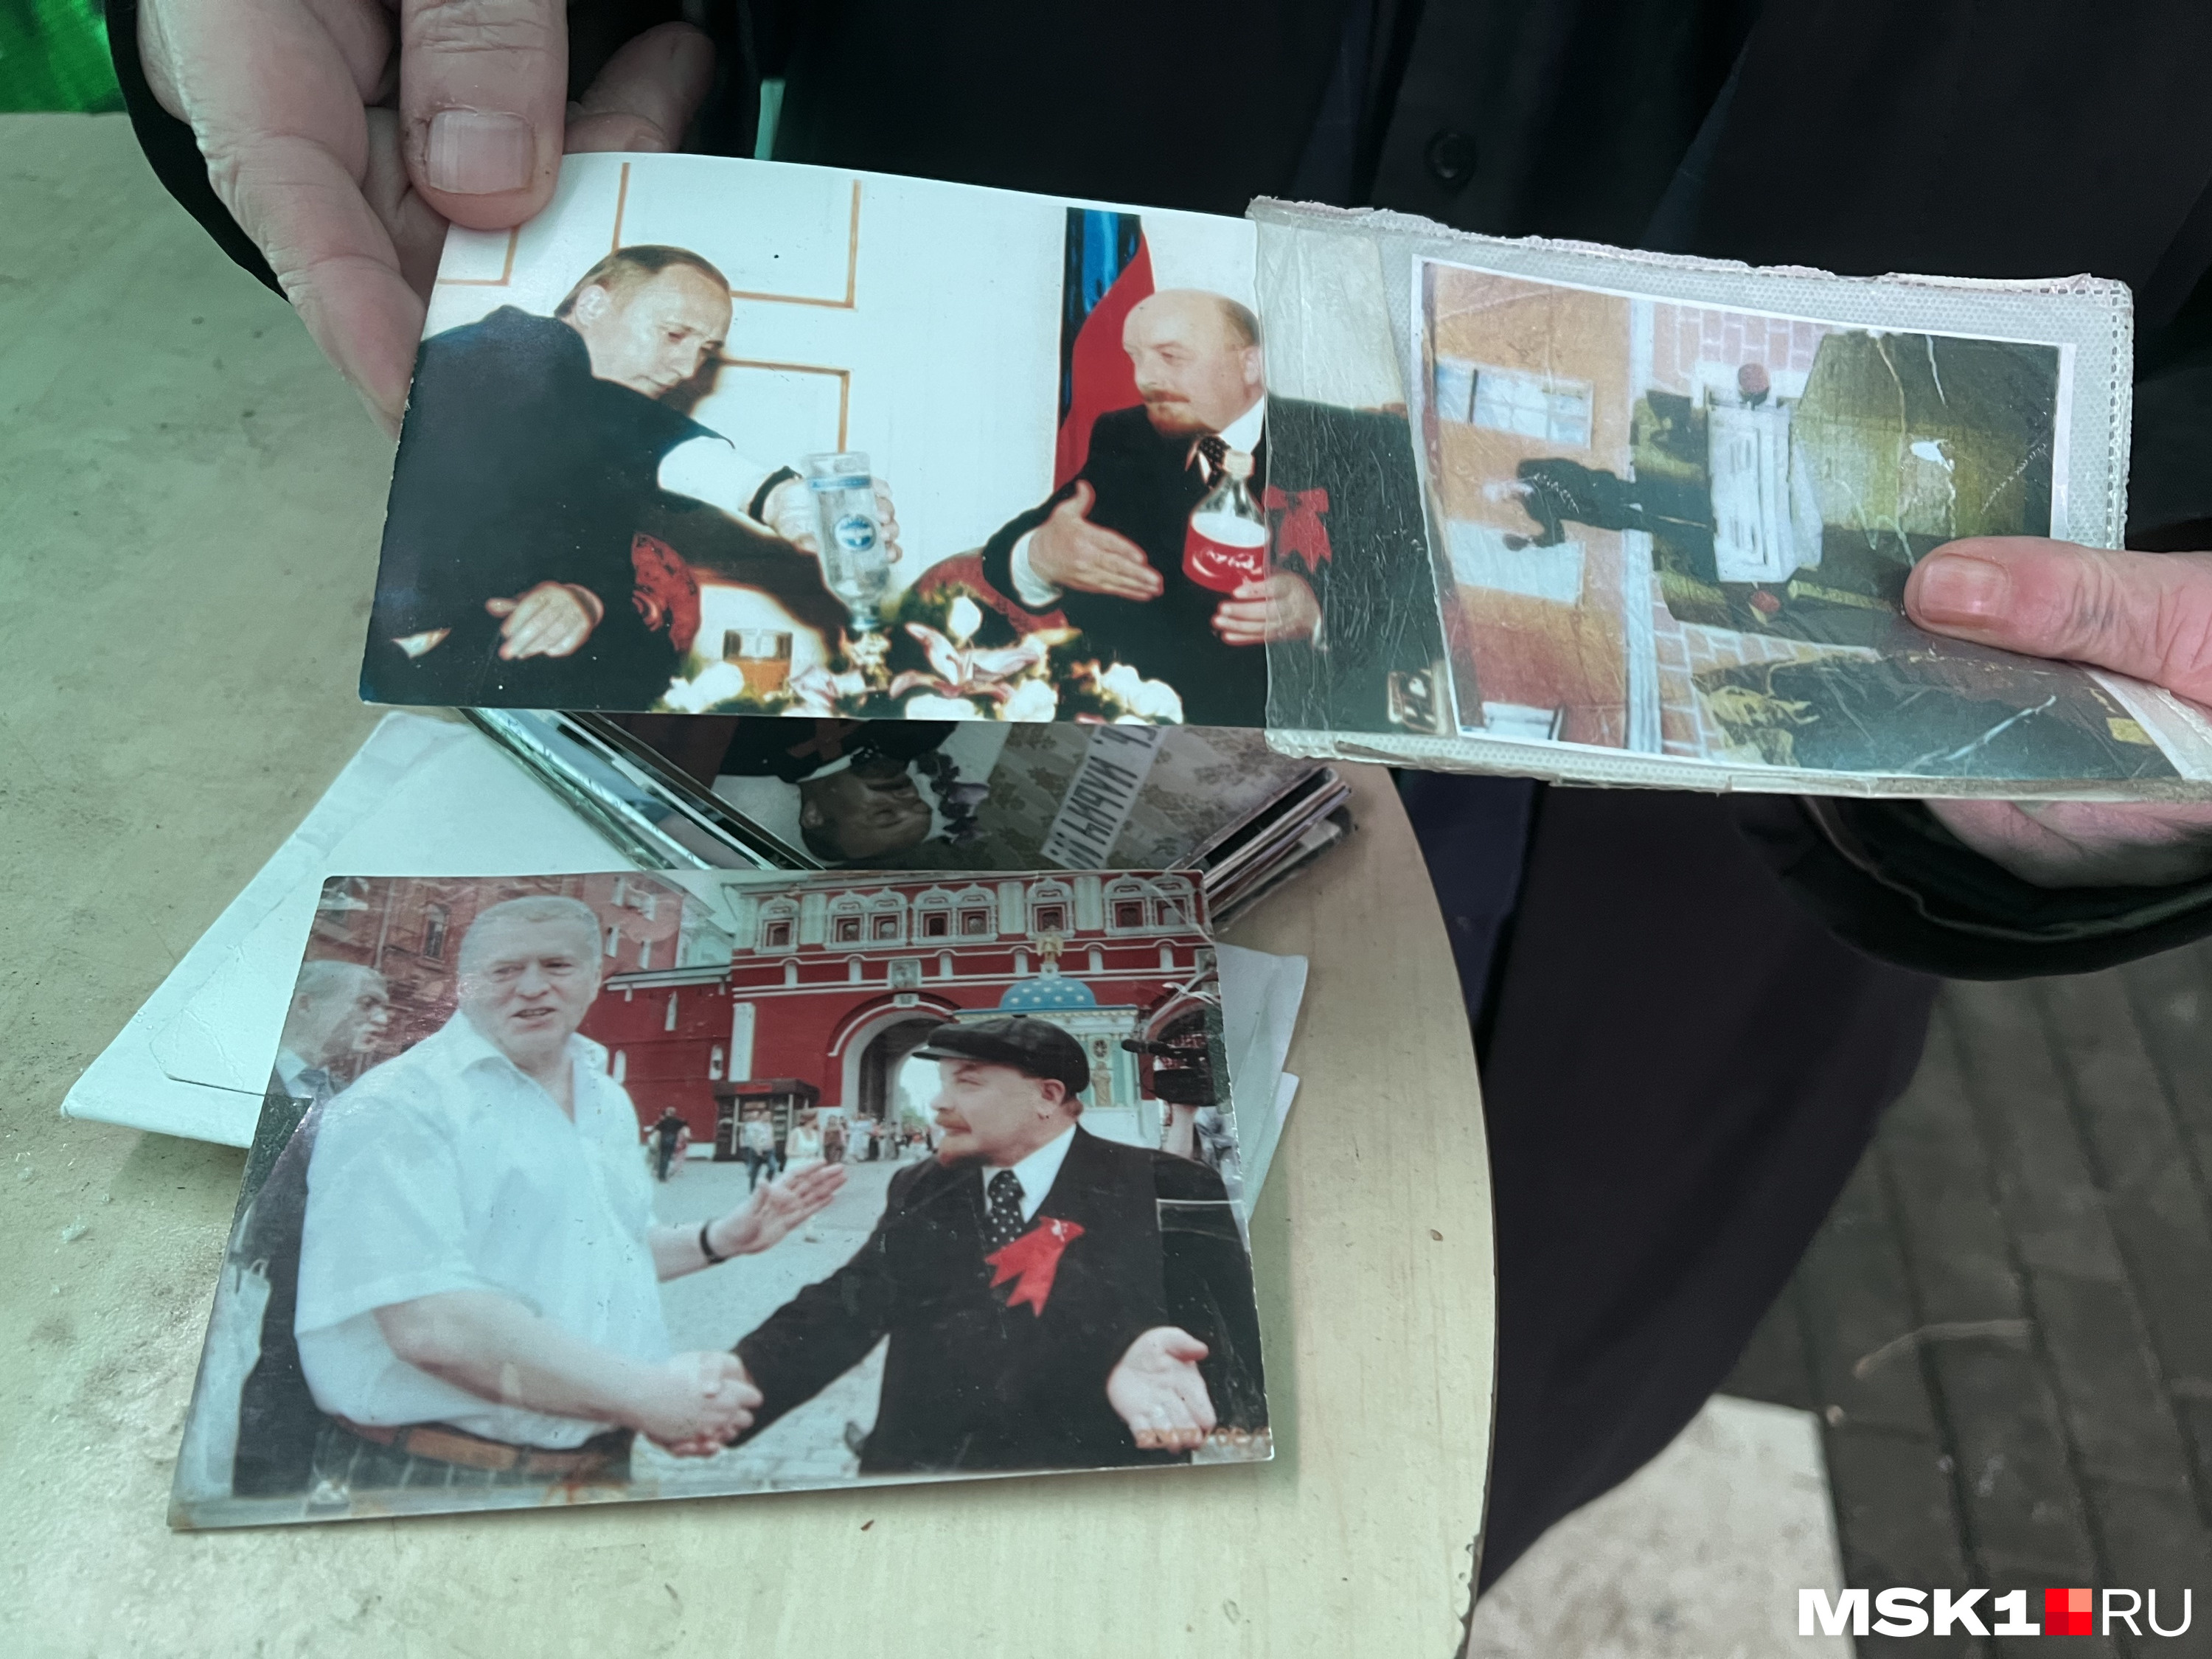 «С Жириновским фото настоящее, а вот с Путиным — монтаж», — объясняет Александр Карлышев